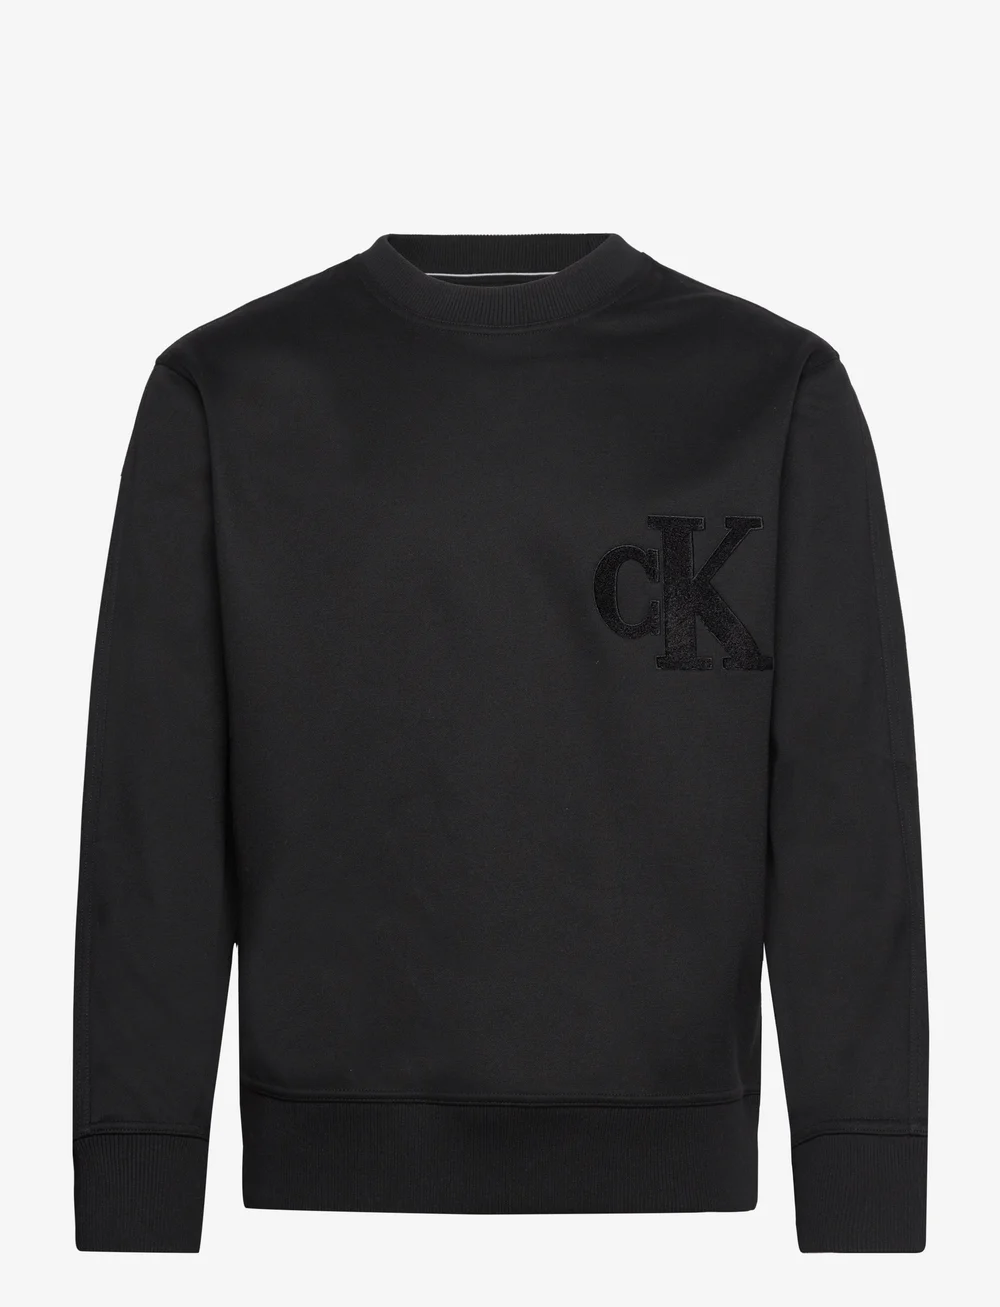 tragt filosof Stavning Calvin Klein Jeans Ck Chenille Crew Neck - Sweatshirts - Boozt.com